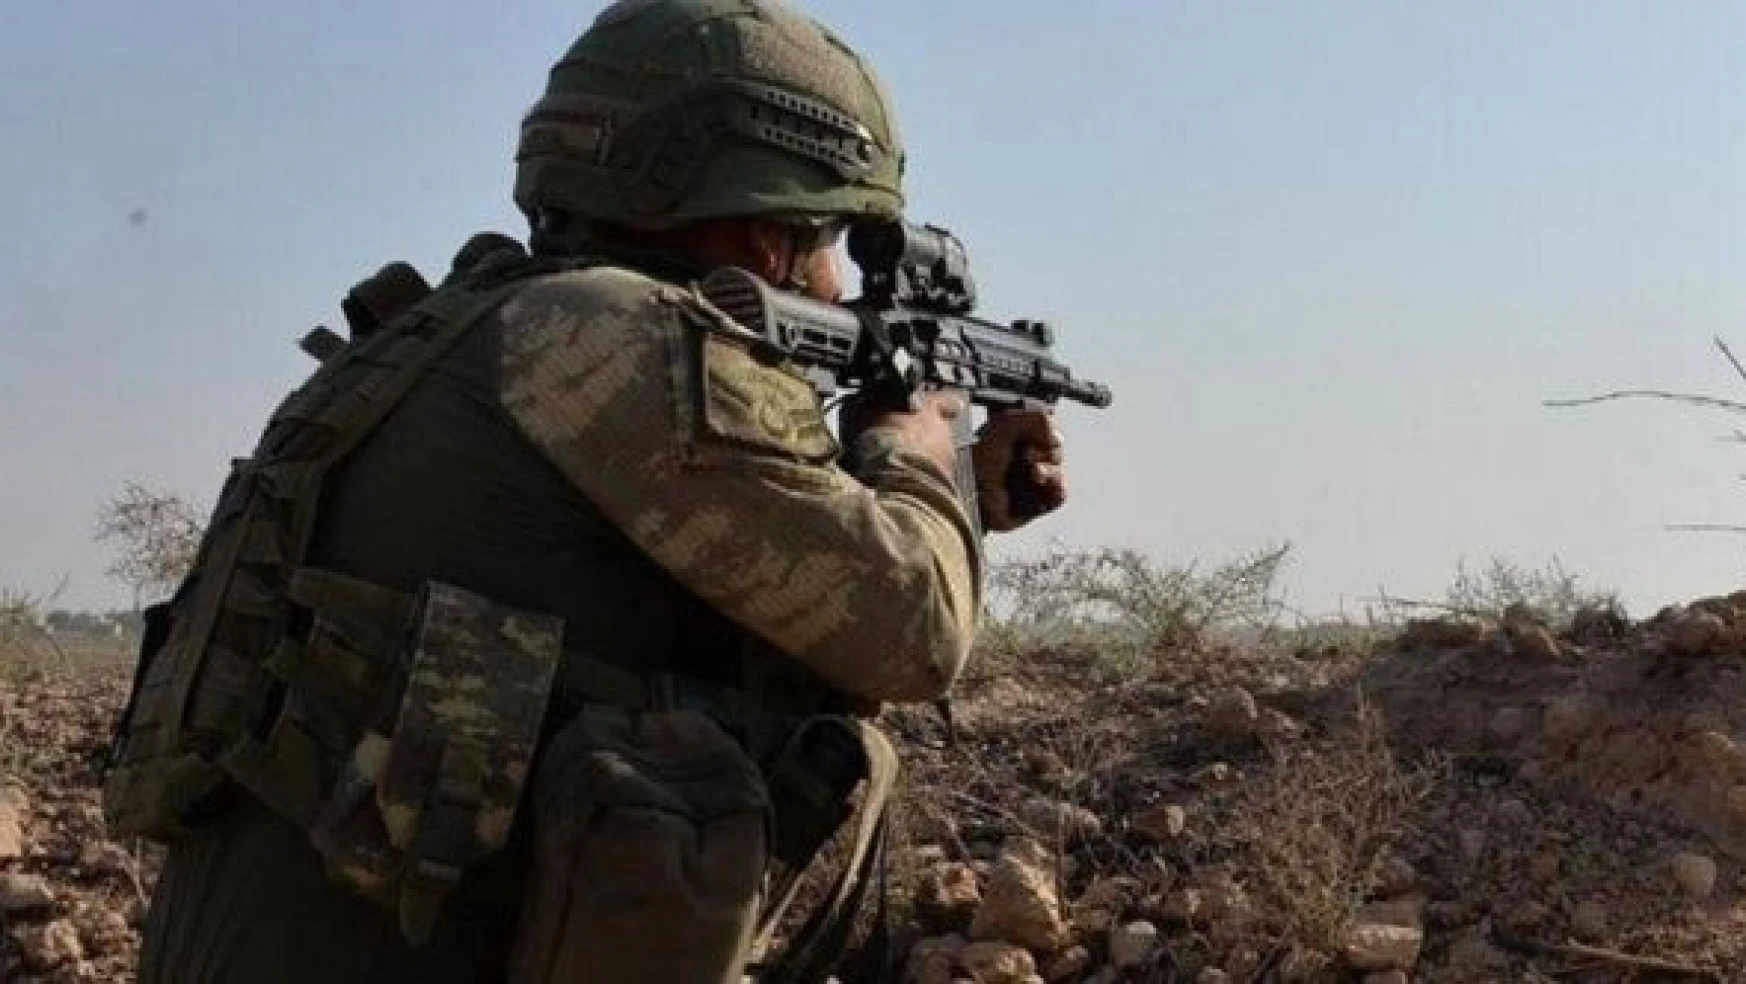 Şırnak'ta 'Eren Abluka-14 Operasyonu' başlatıldı